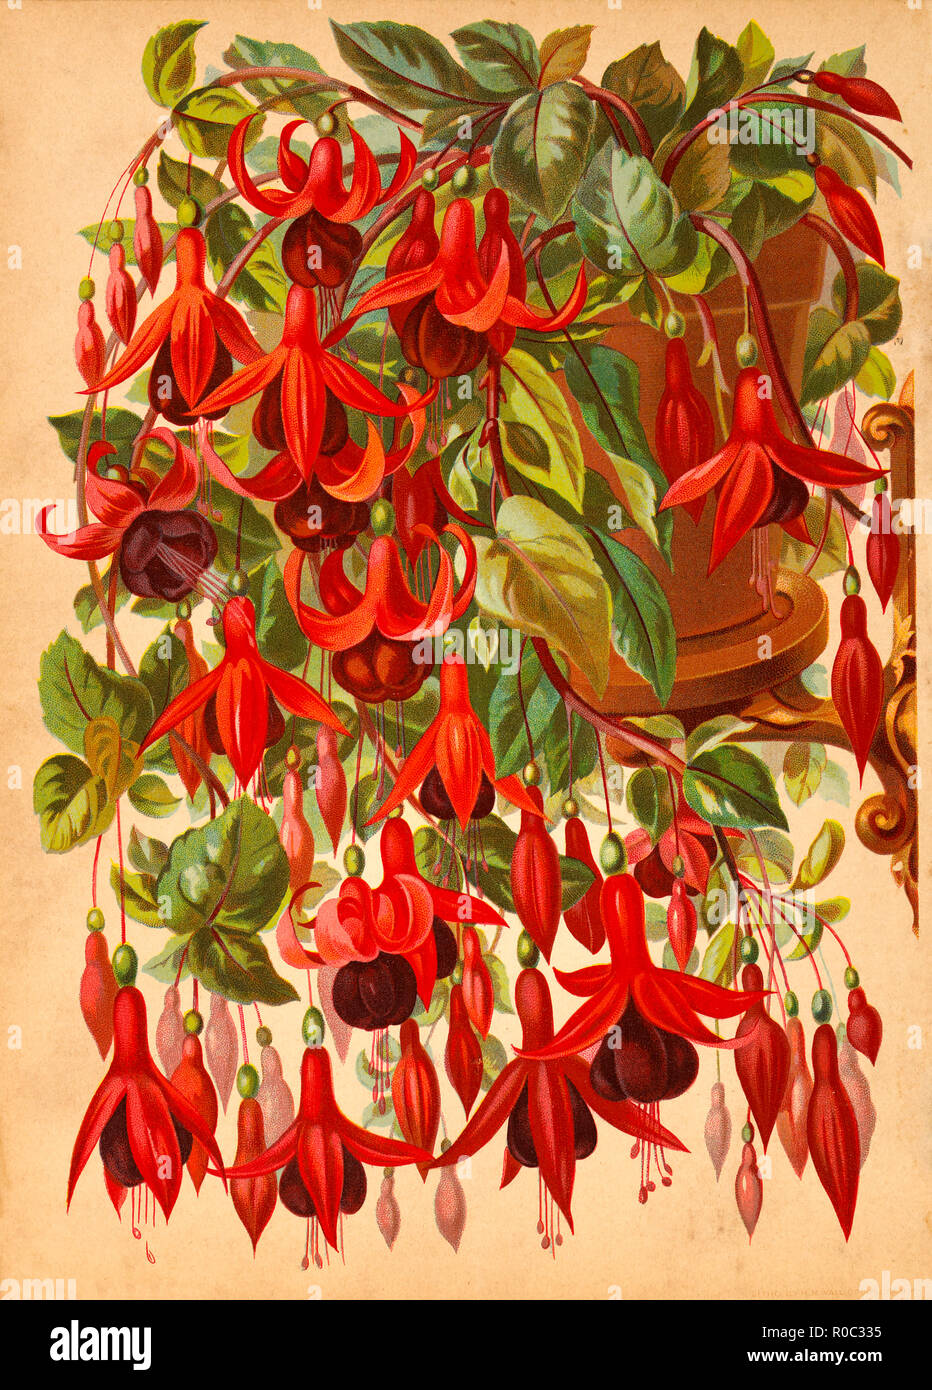 Chèvrefeuille, Vigne rouge sur la chromolithographie, H.M. Wall, 1892 Banque D'Images